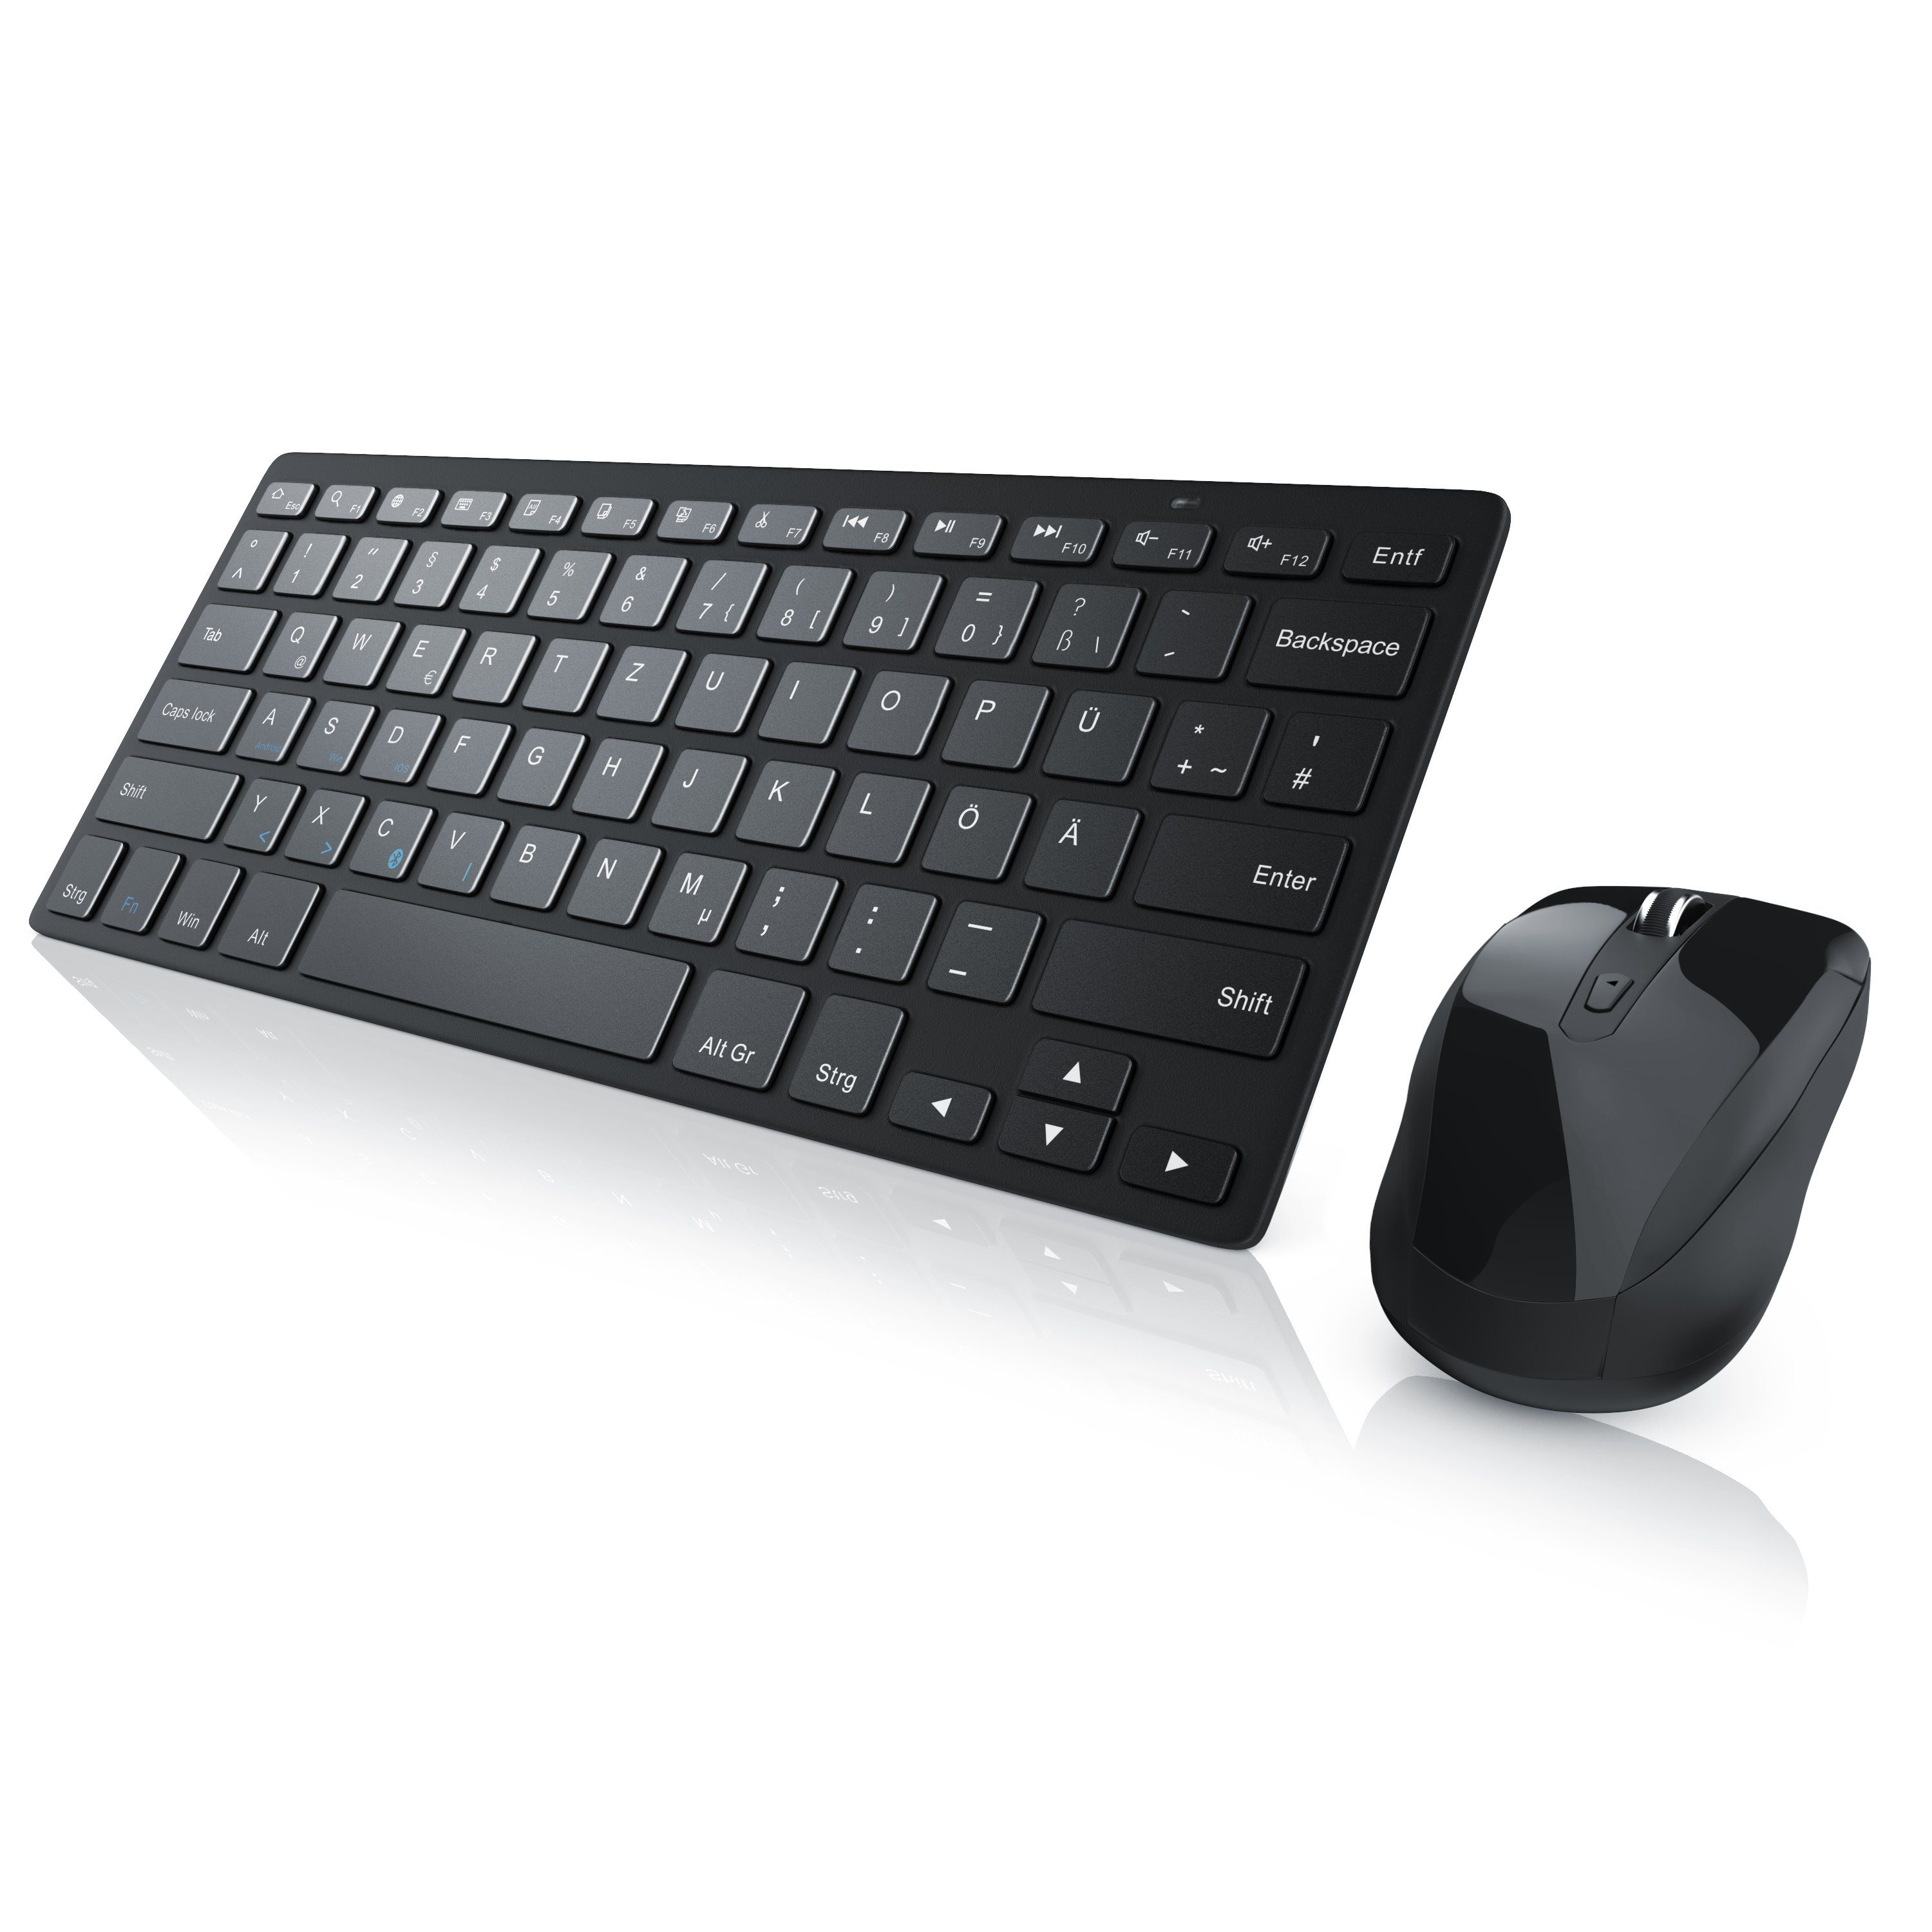 Aplic Tastatur- und Maus-Set, Wireless Bluetooth Keyboard + Notebook Mouse  für PC, Smartphone/Tablet